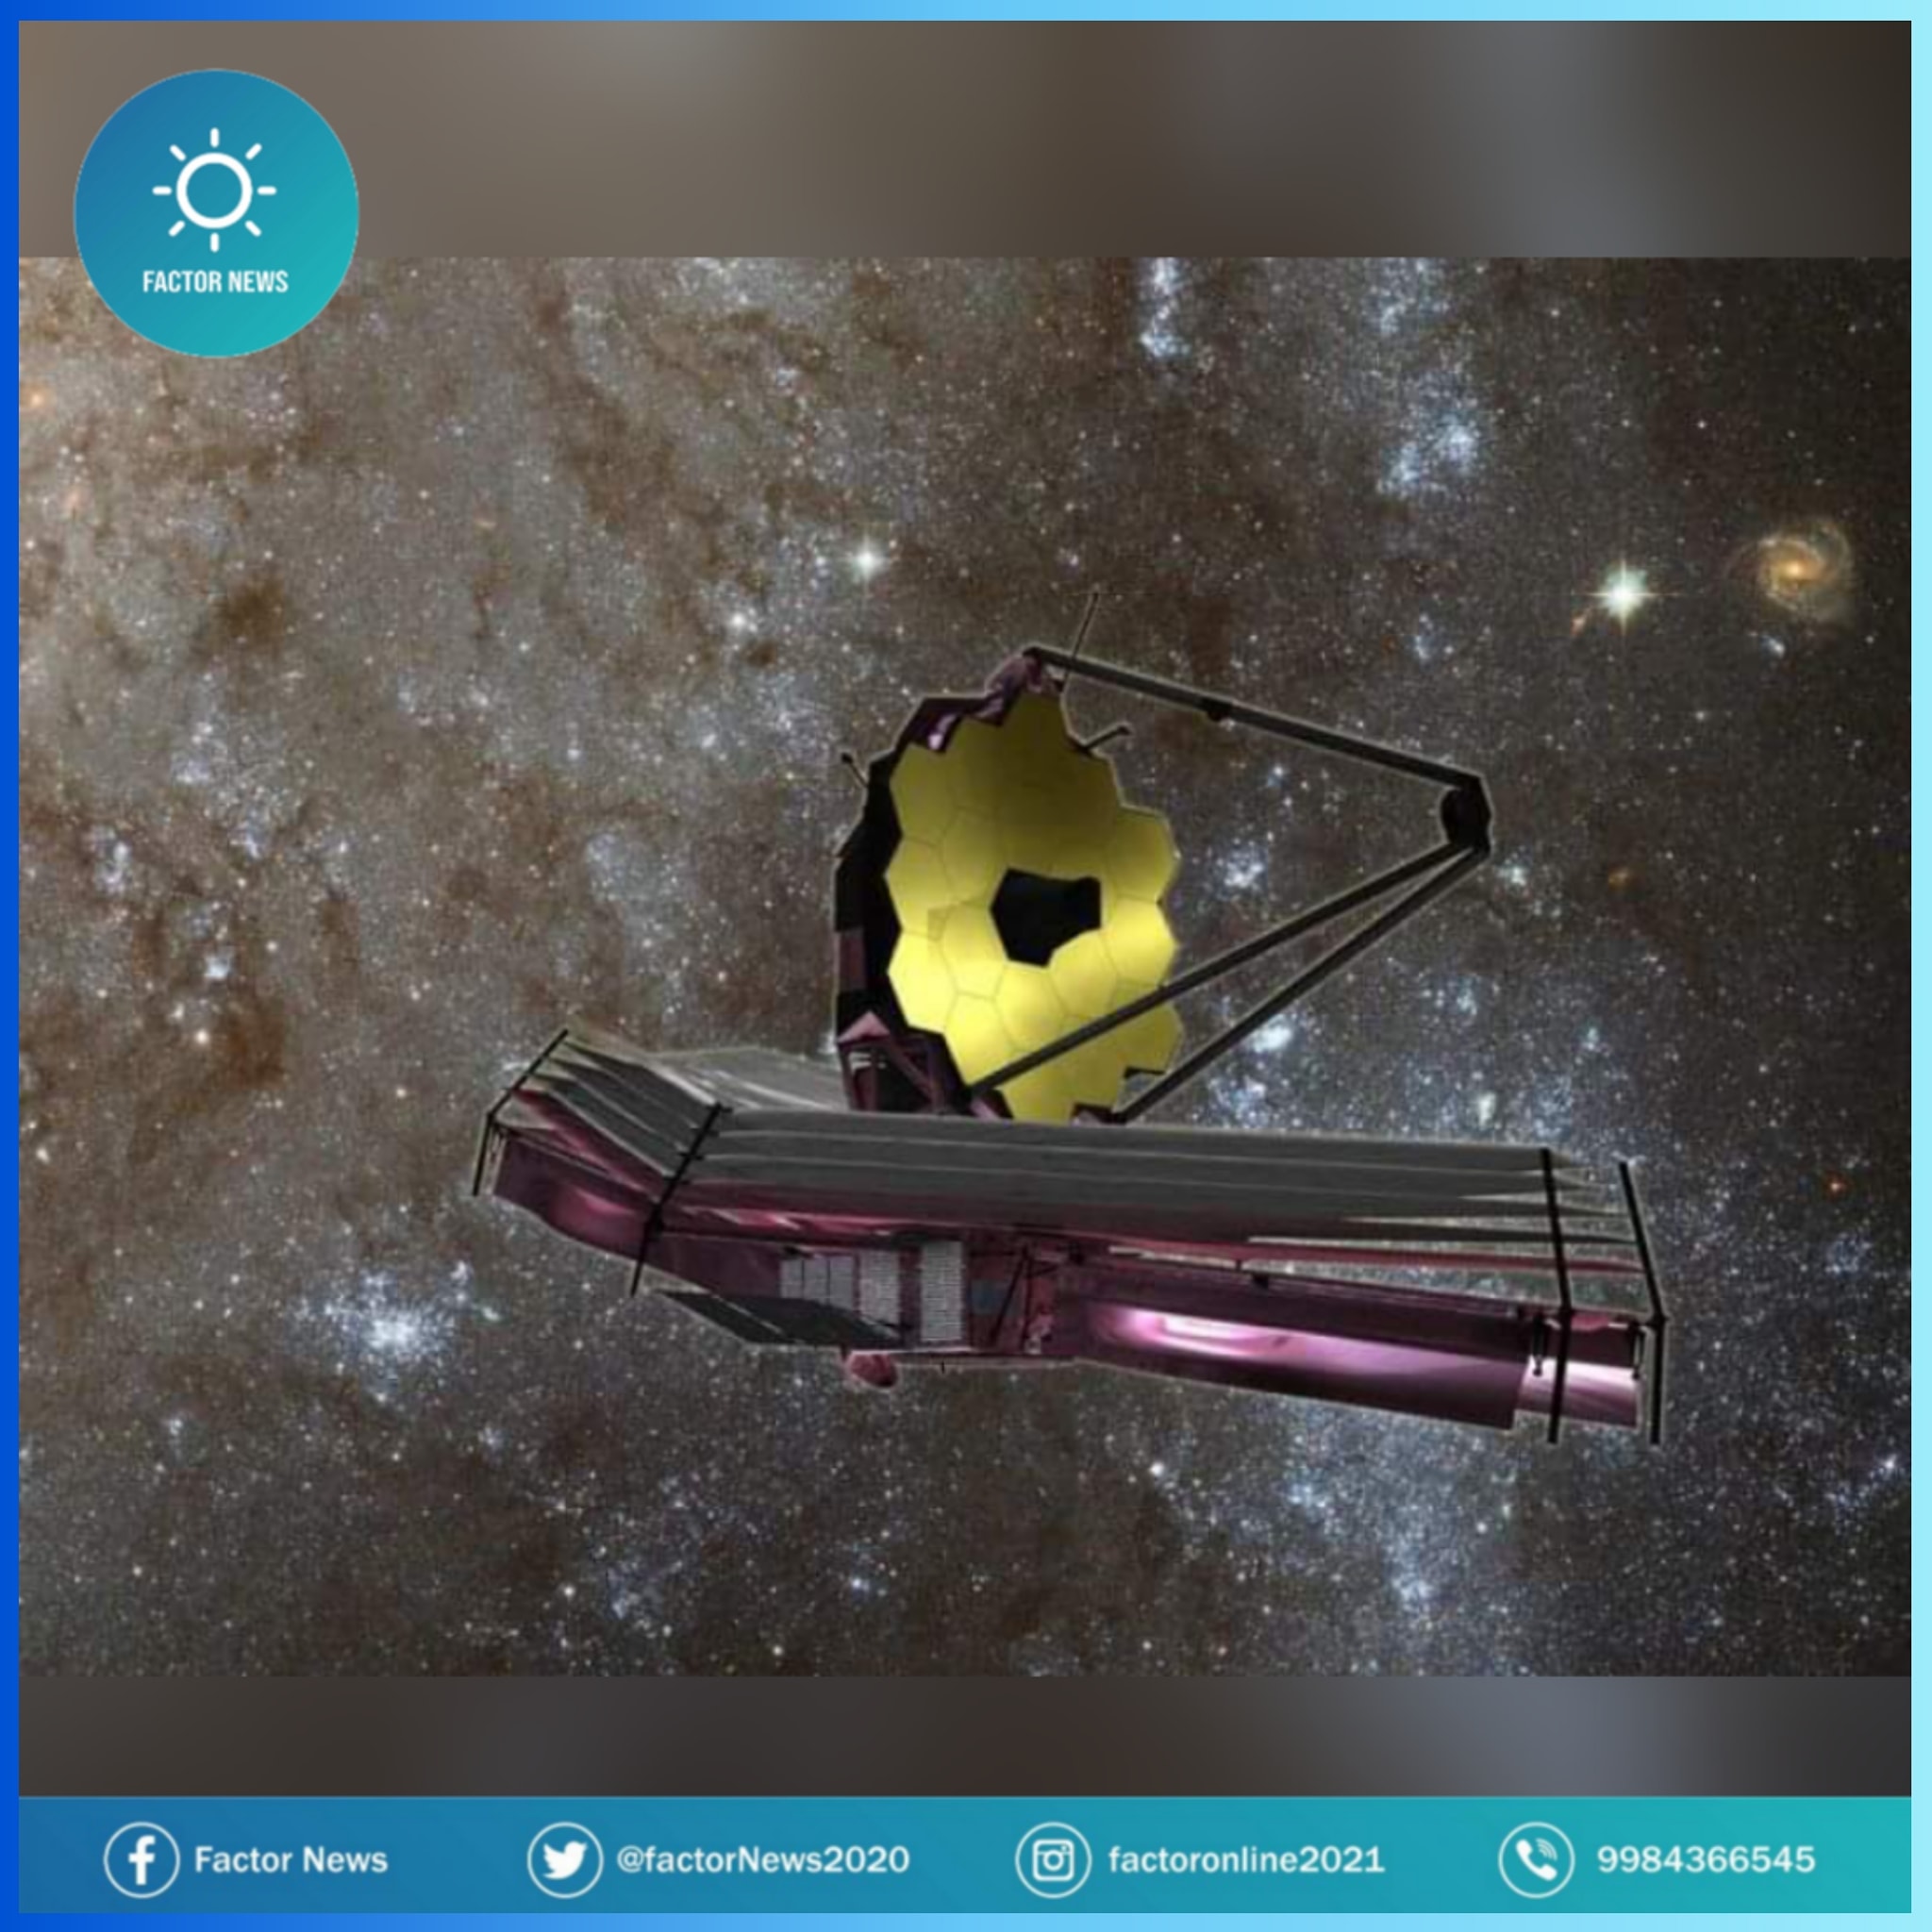 Telescopio James Webb llega a su destino para observar el cosmos.